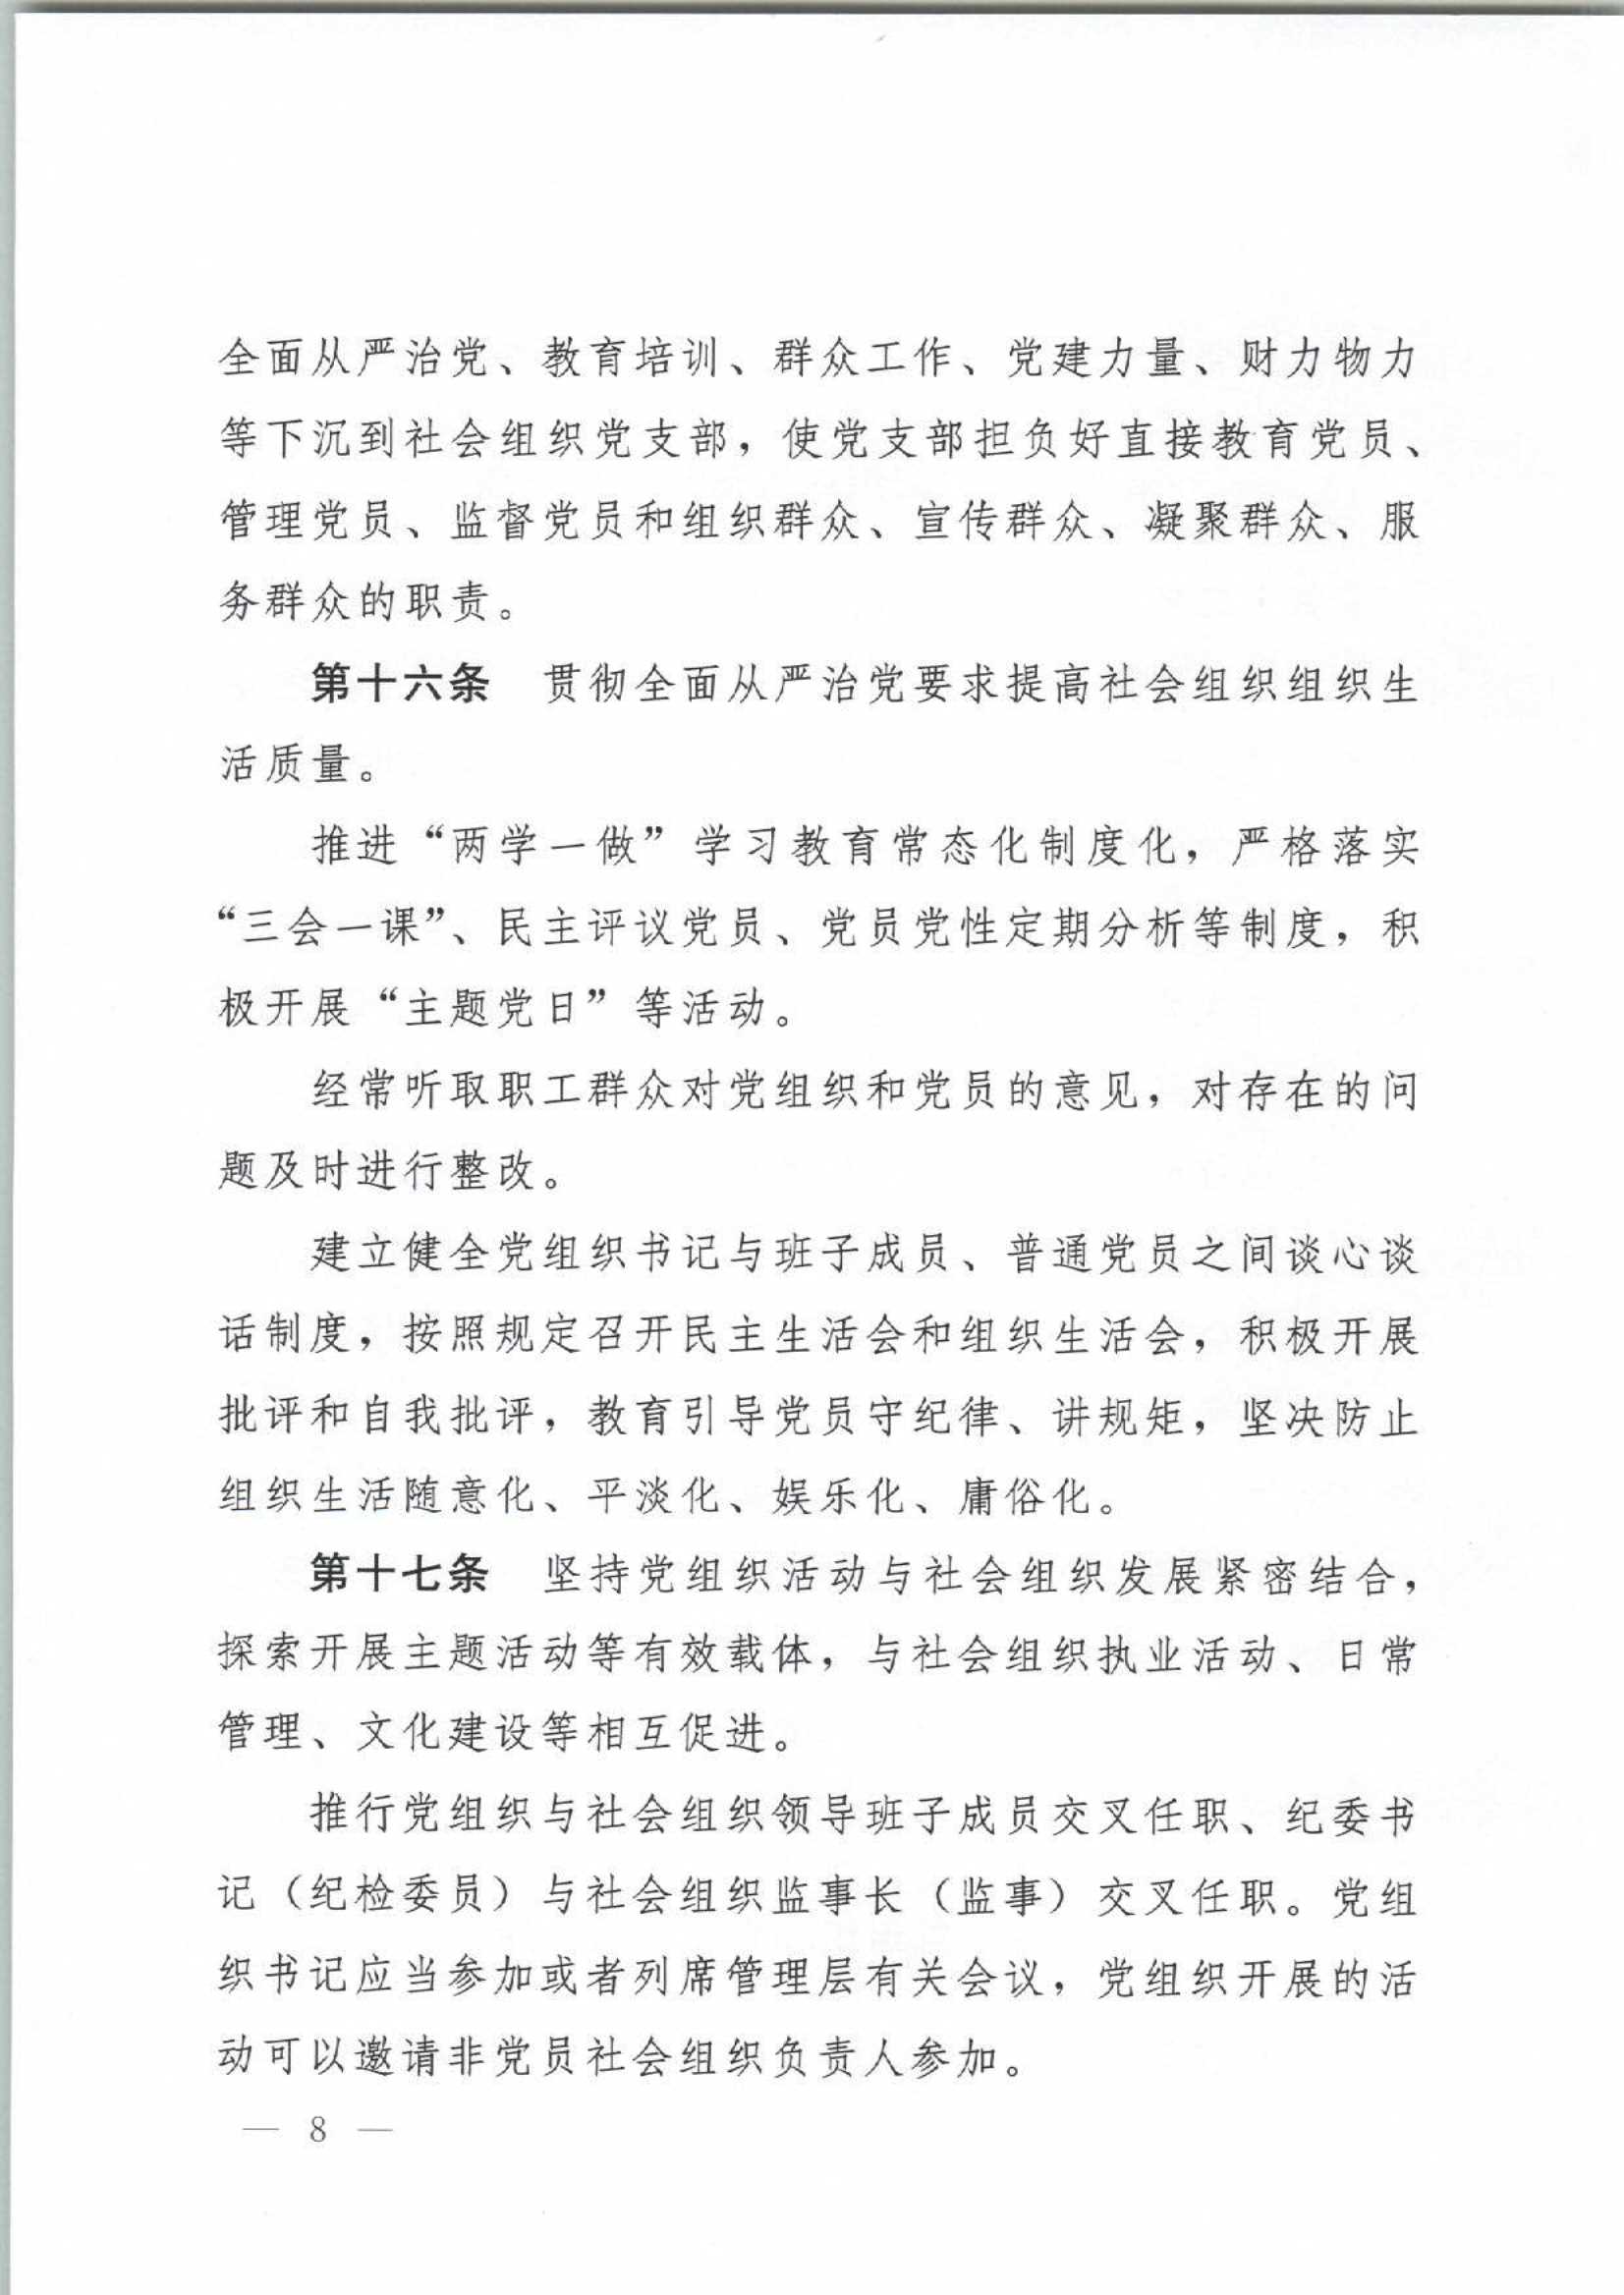 4.深圳市社会组织党的建设工作规定_8.Jpeg